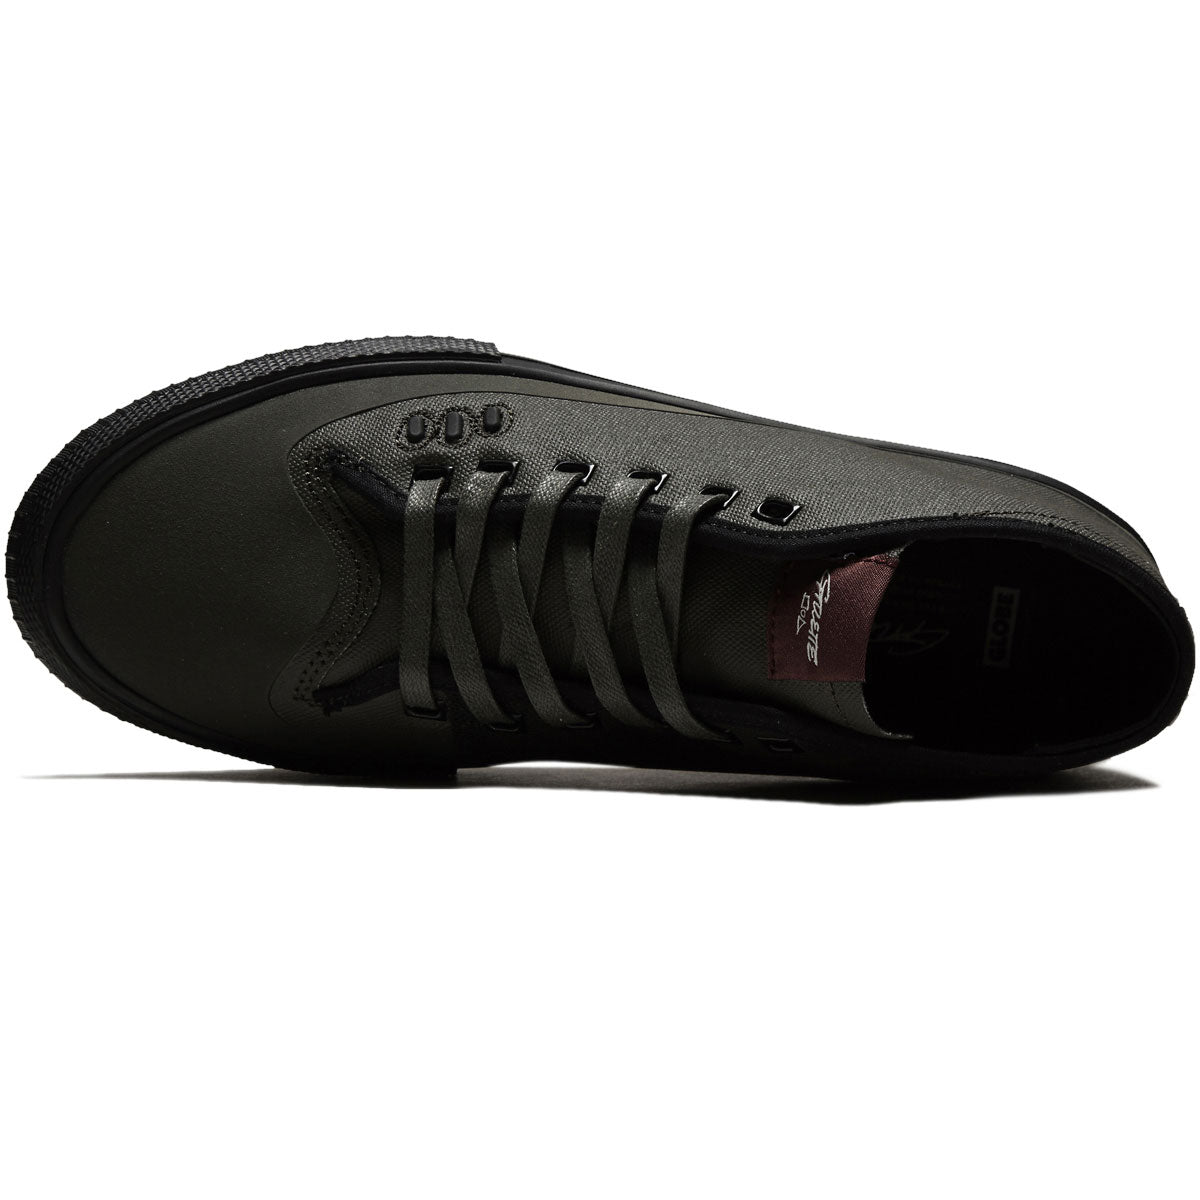 Globe Gillette Mid Shoes - Dark Olive/Black image 3